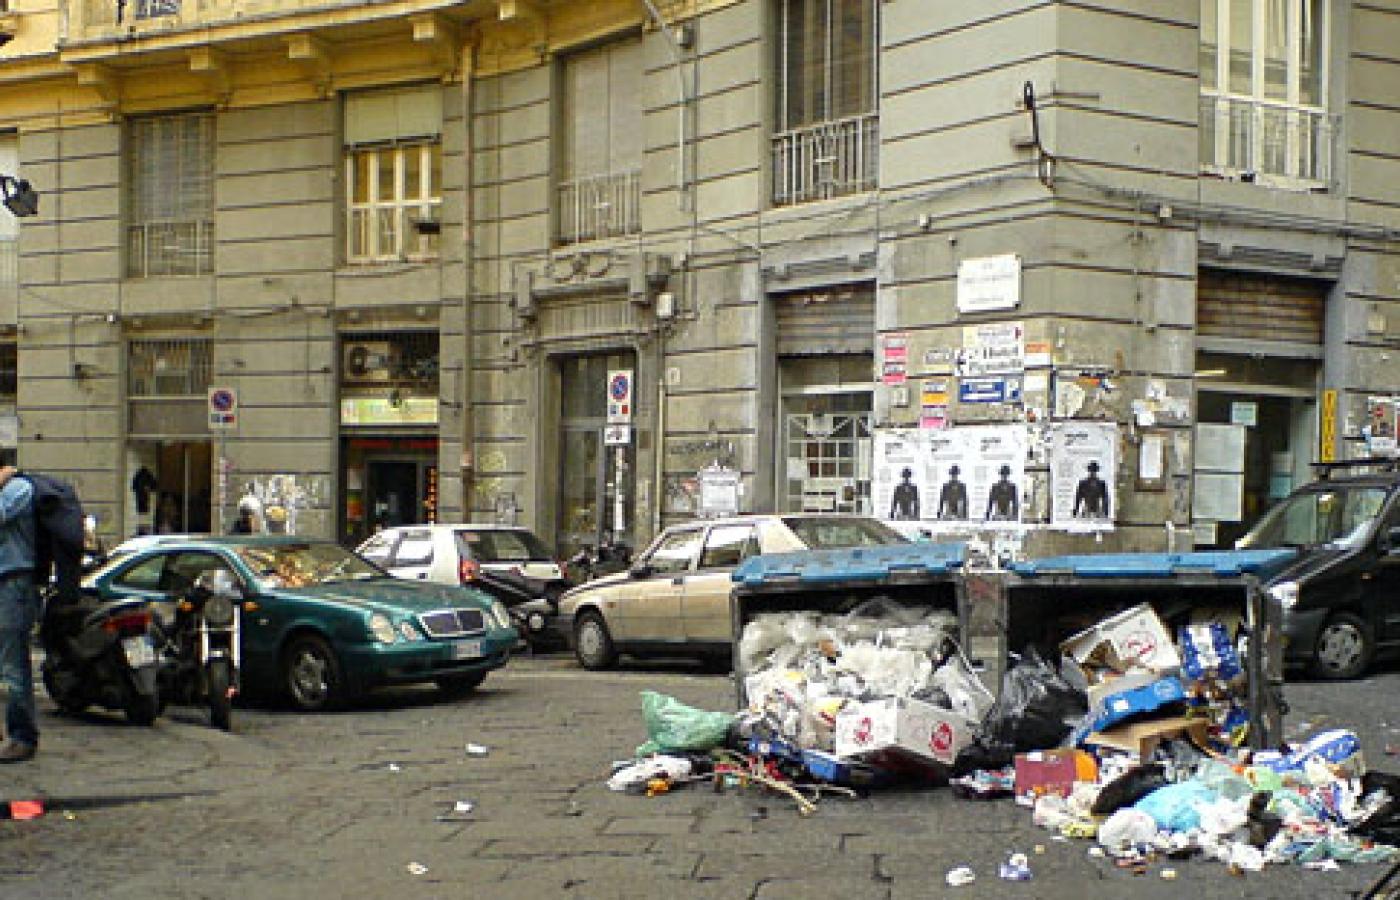 Neapol - to miasto już tak nie wygląda. Fot. Sal, Flickr, CC by SA